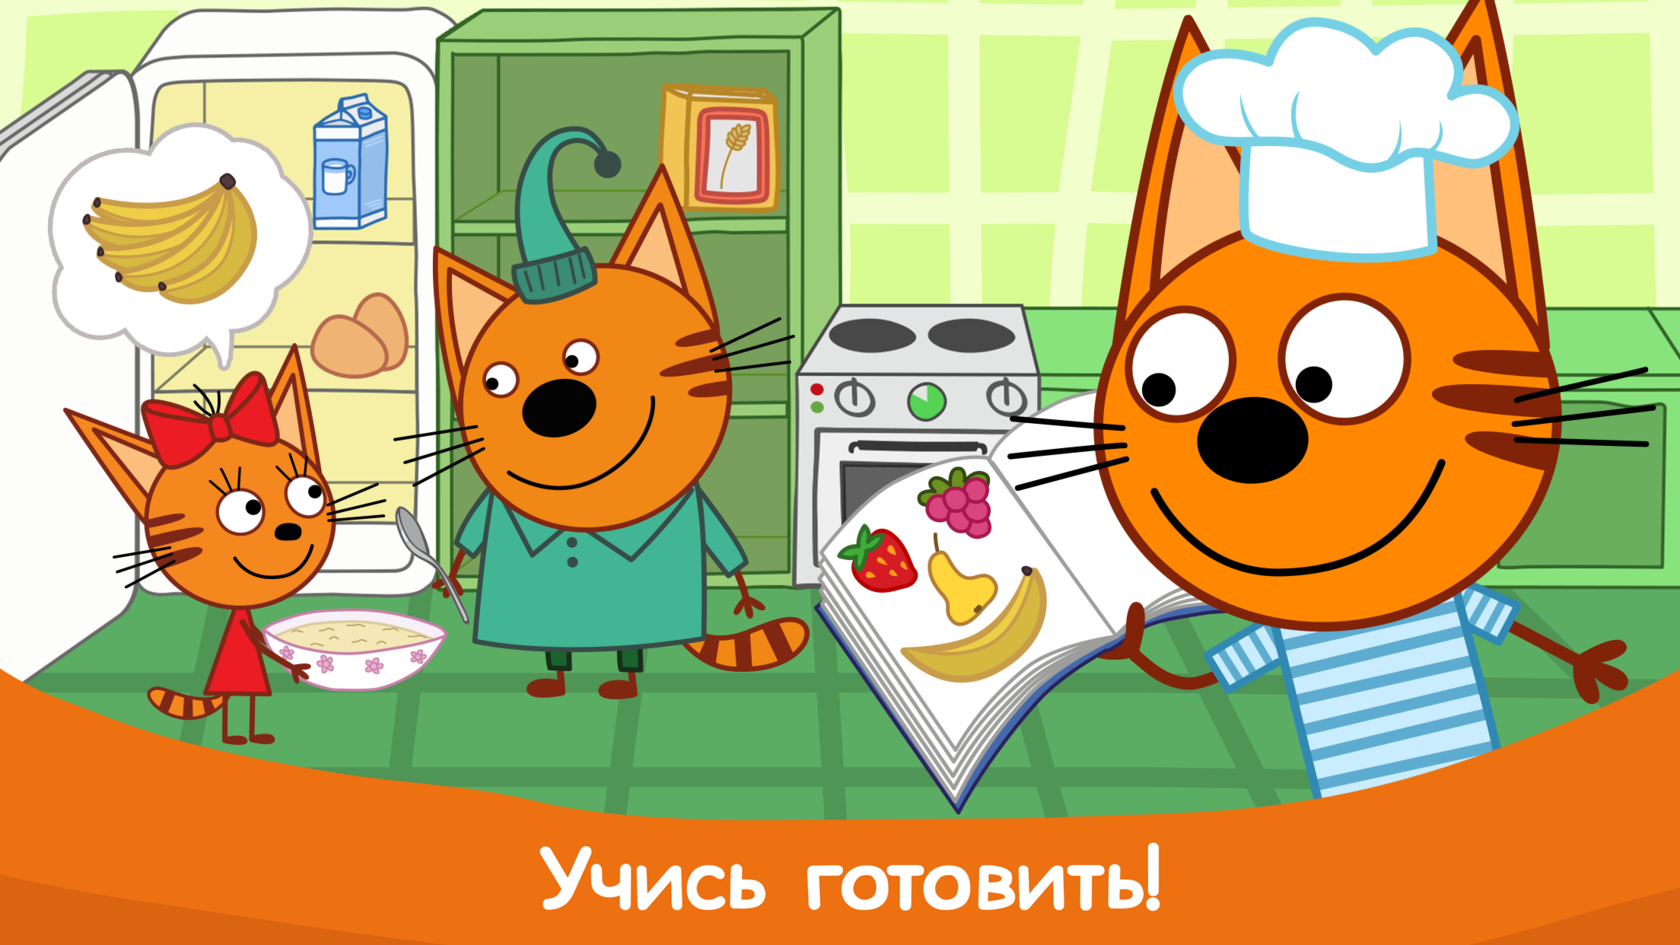 3 кота готовим. Три кота кухня. Три кота готовят. Кухня трех котов. Три кота стряпают.